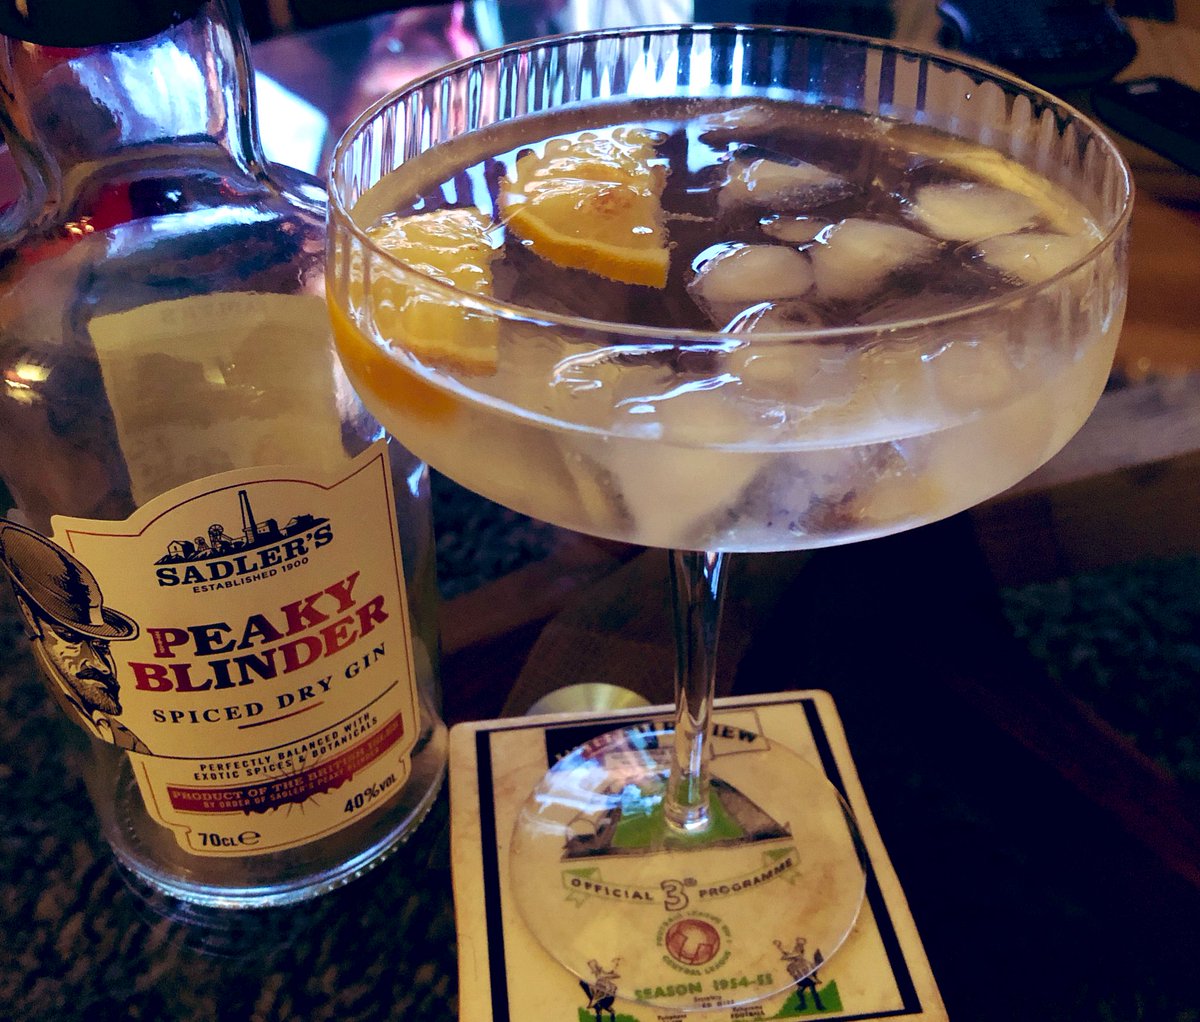 Peaky Blinder gin in Peaky Blinder style 💕 @sadlersales @ThePeakyBlinder